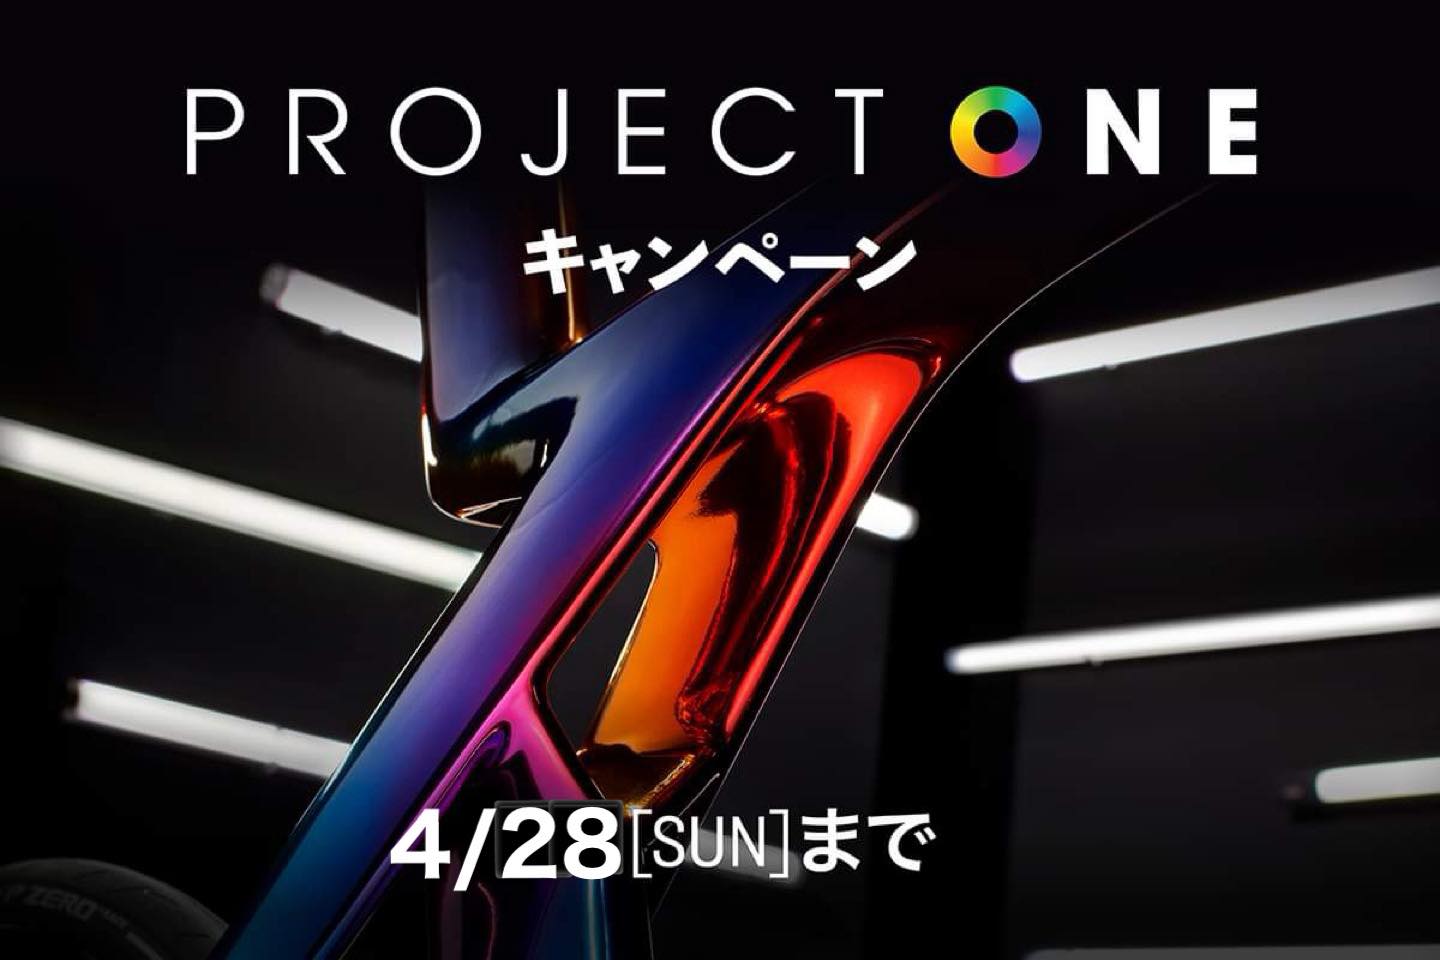 【キャンペーン】 Project One キャンペーンの お知らせ！！